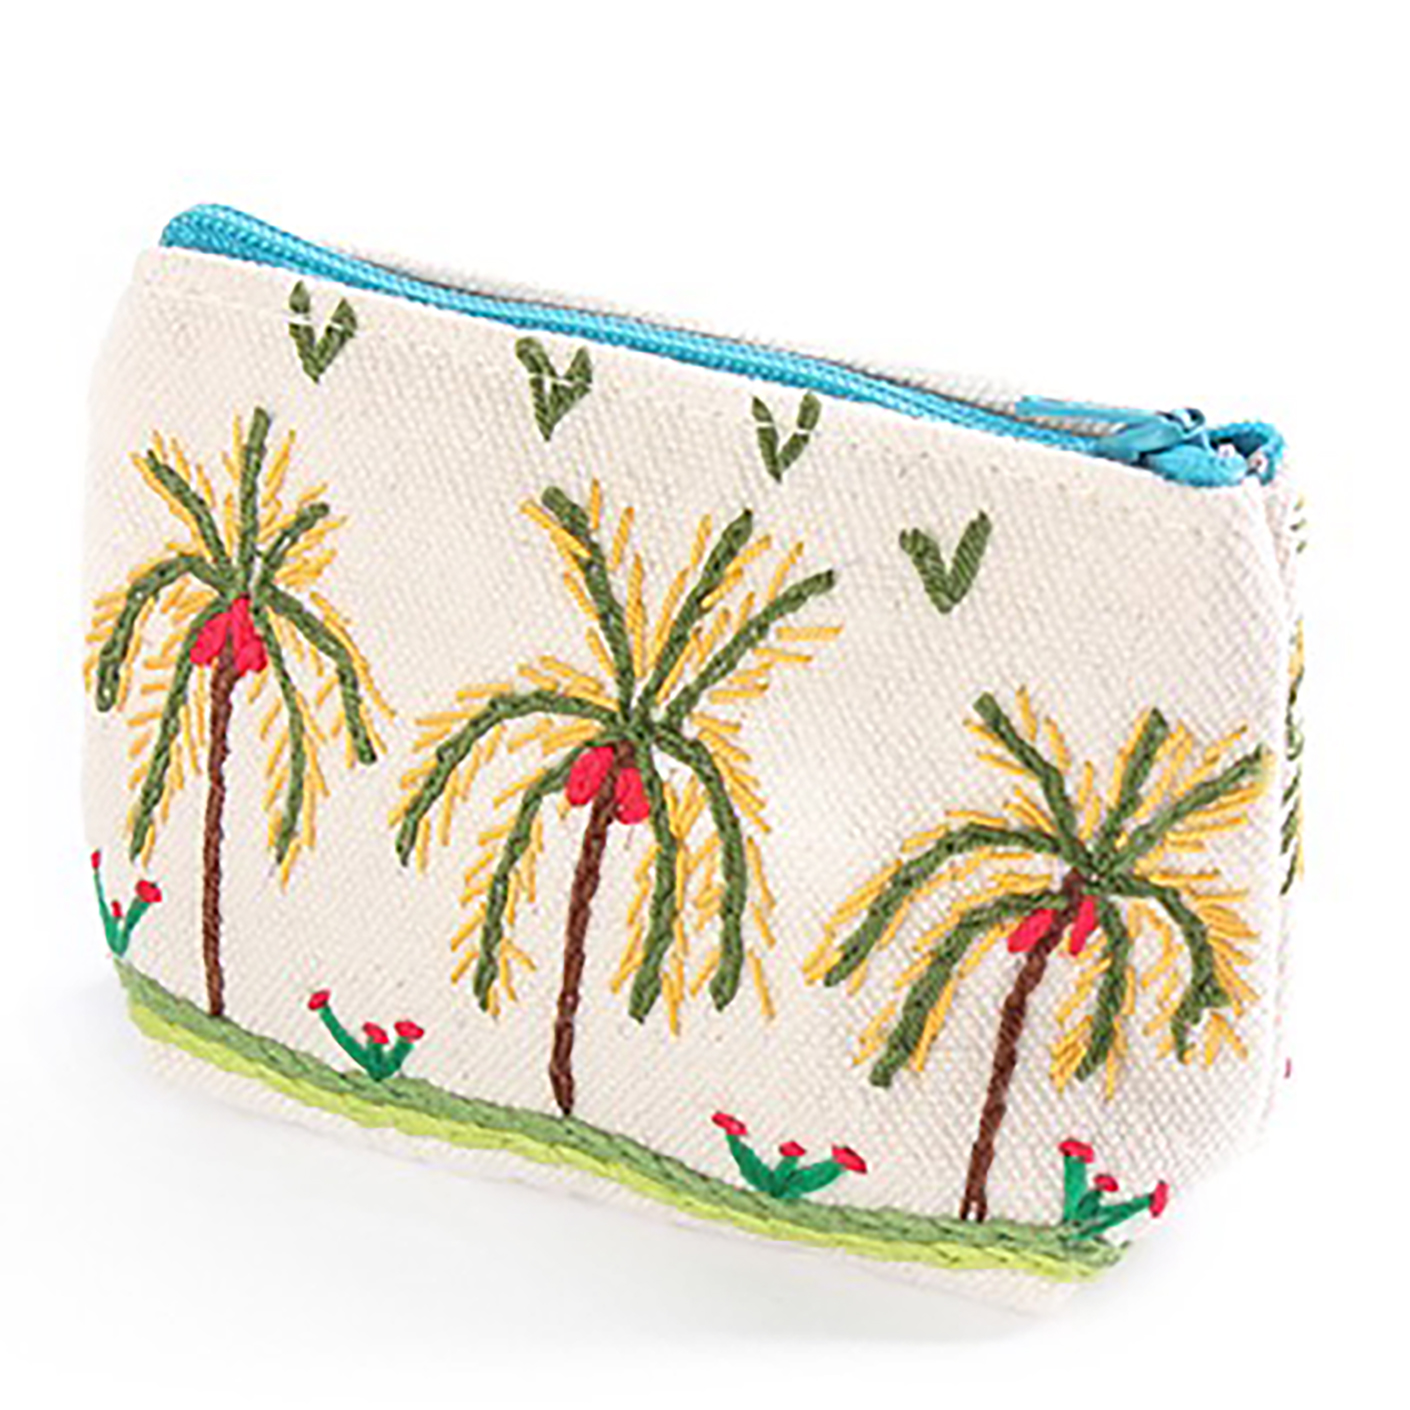 Embroidered fabric wallet محفظة قماش مطرزة